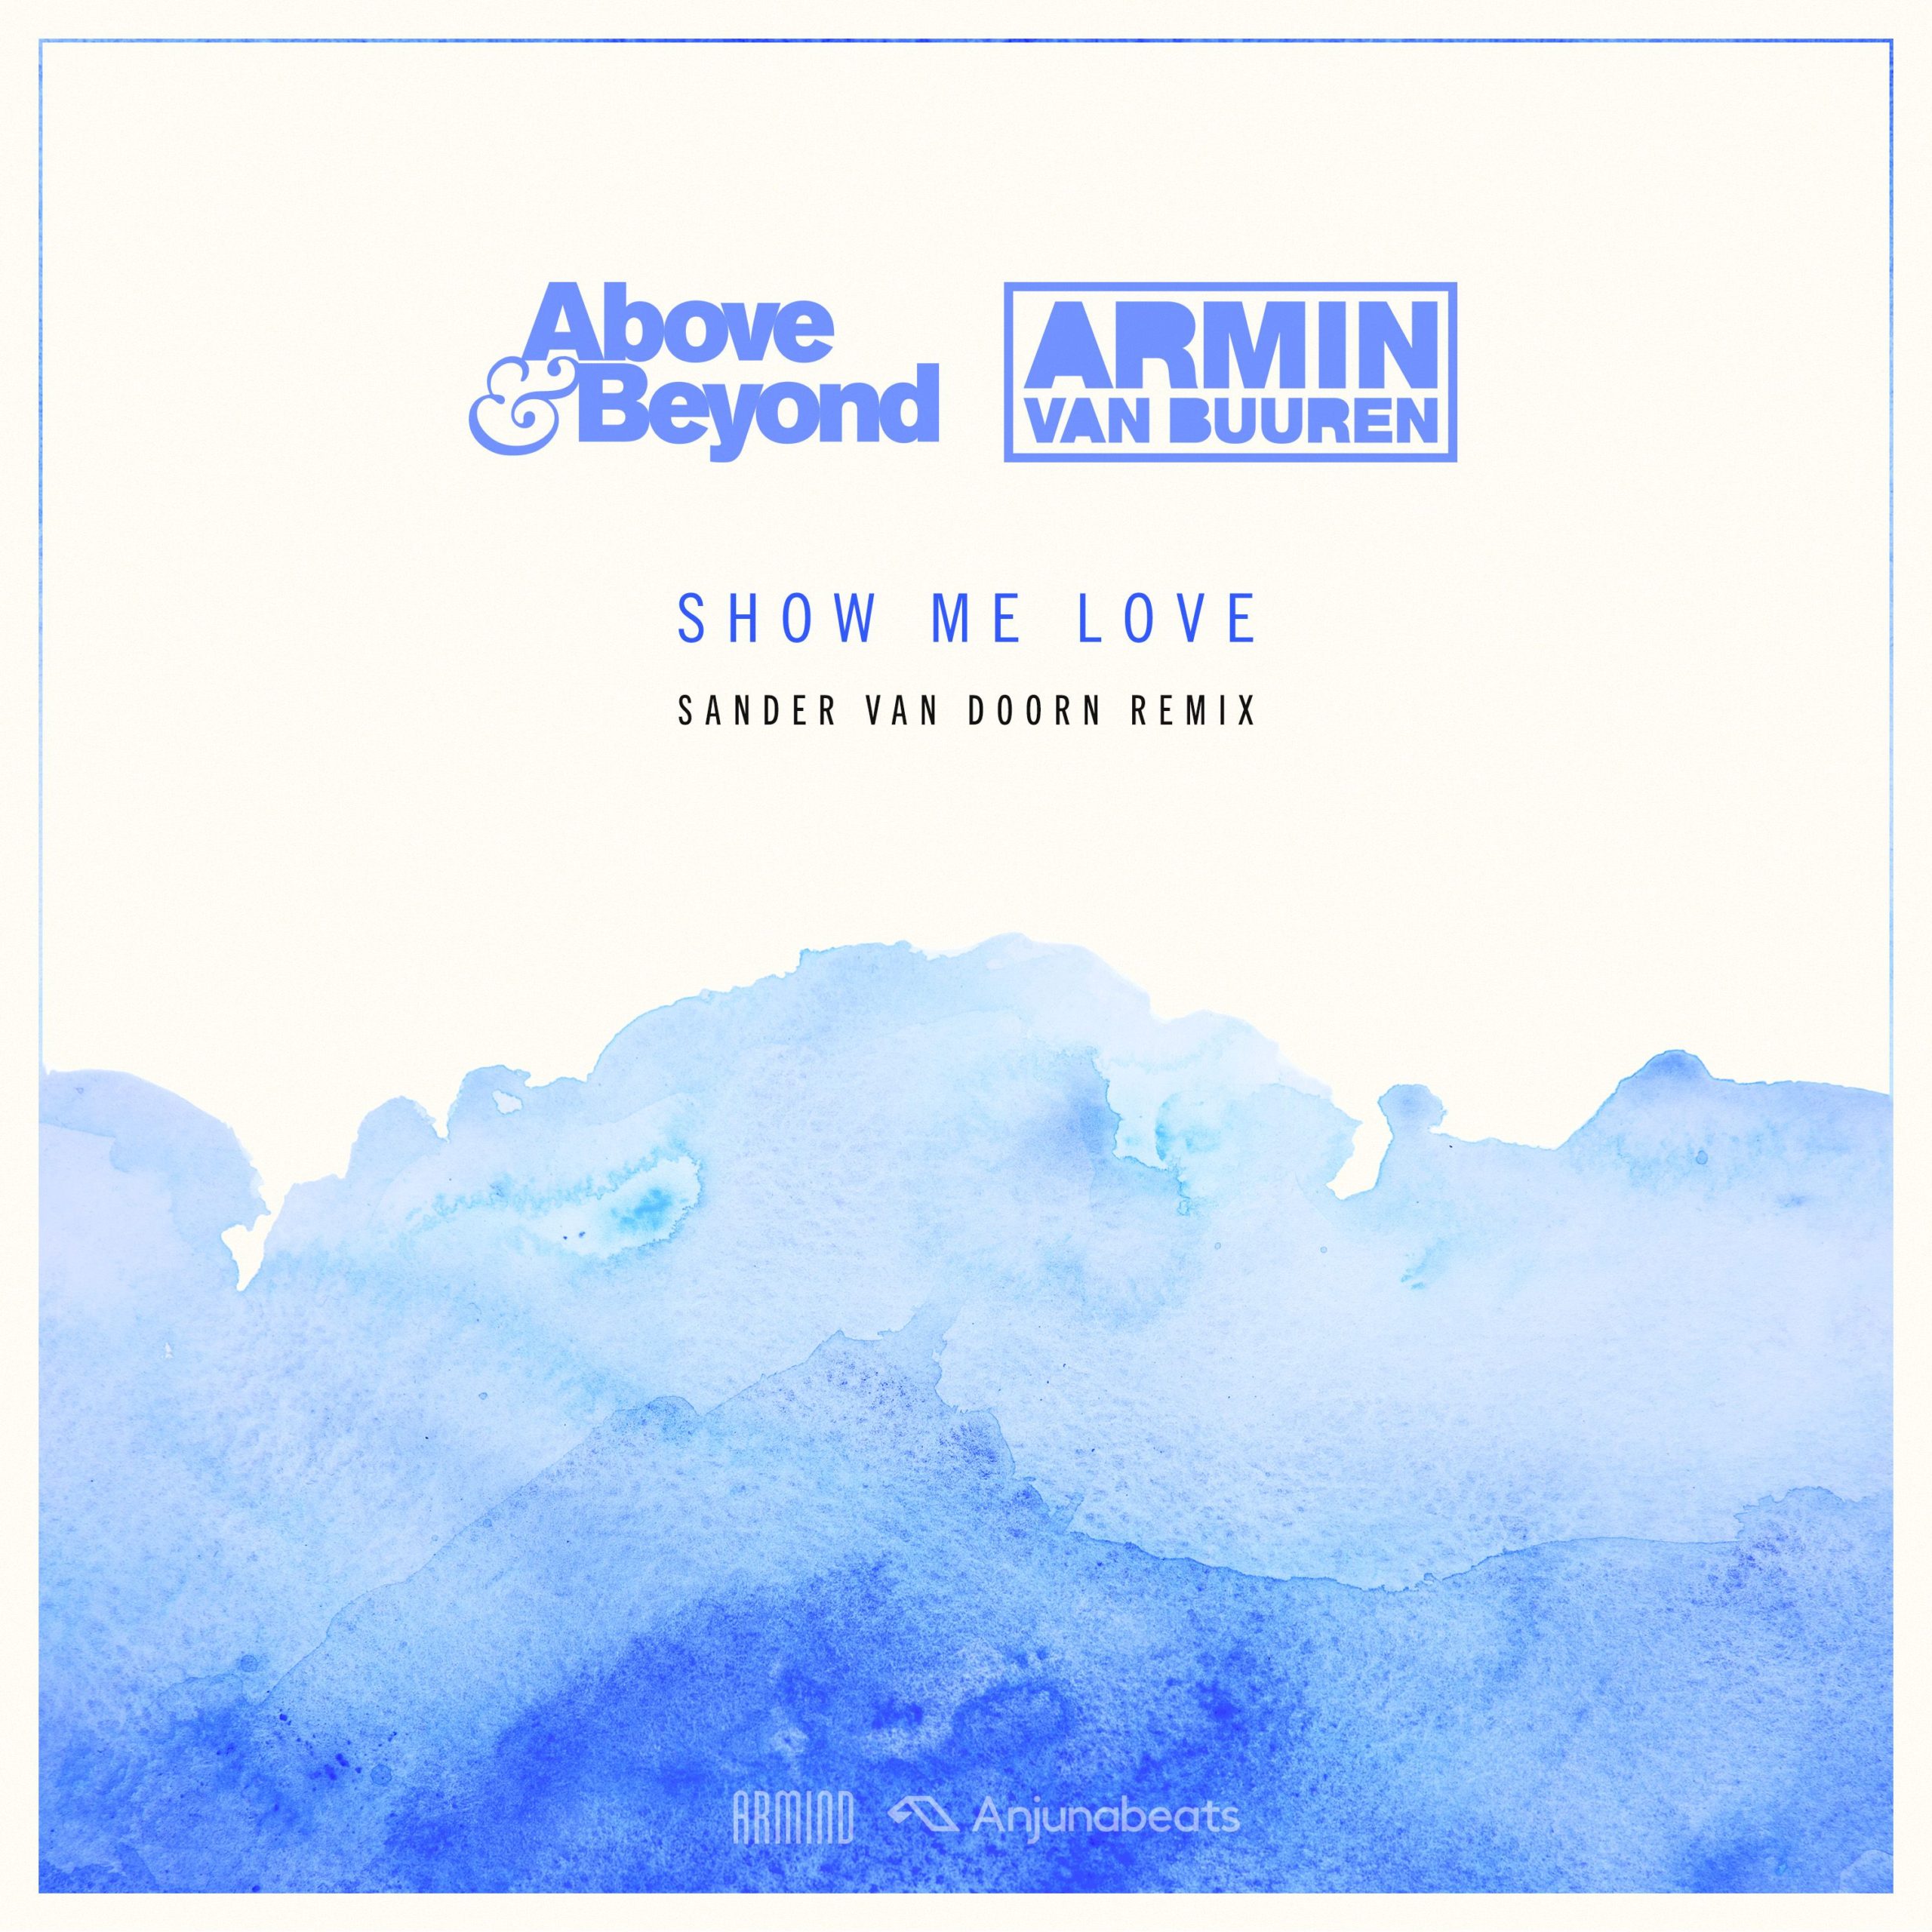 Above and Beyond vs Armin van Buuren presents Show Me Love (Sander van Doorn Remix)